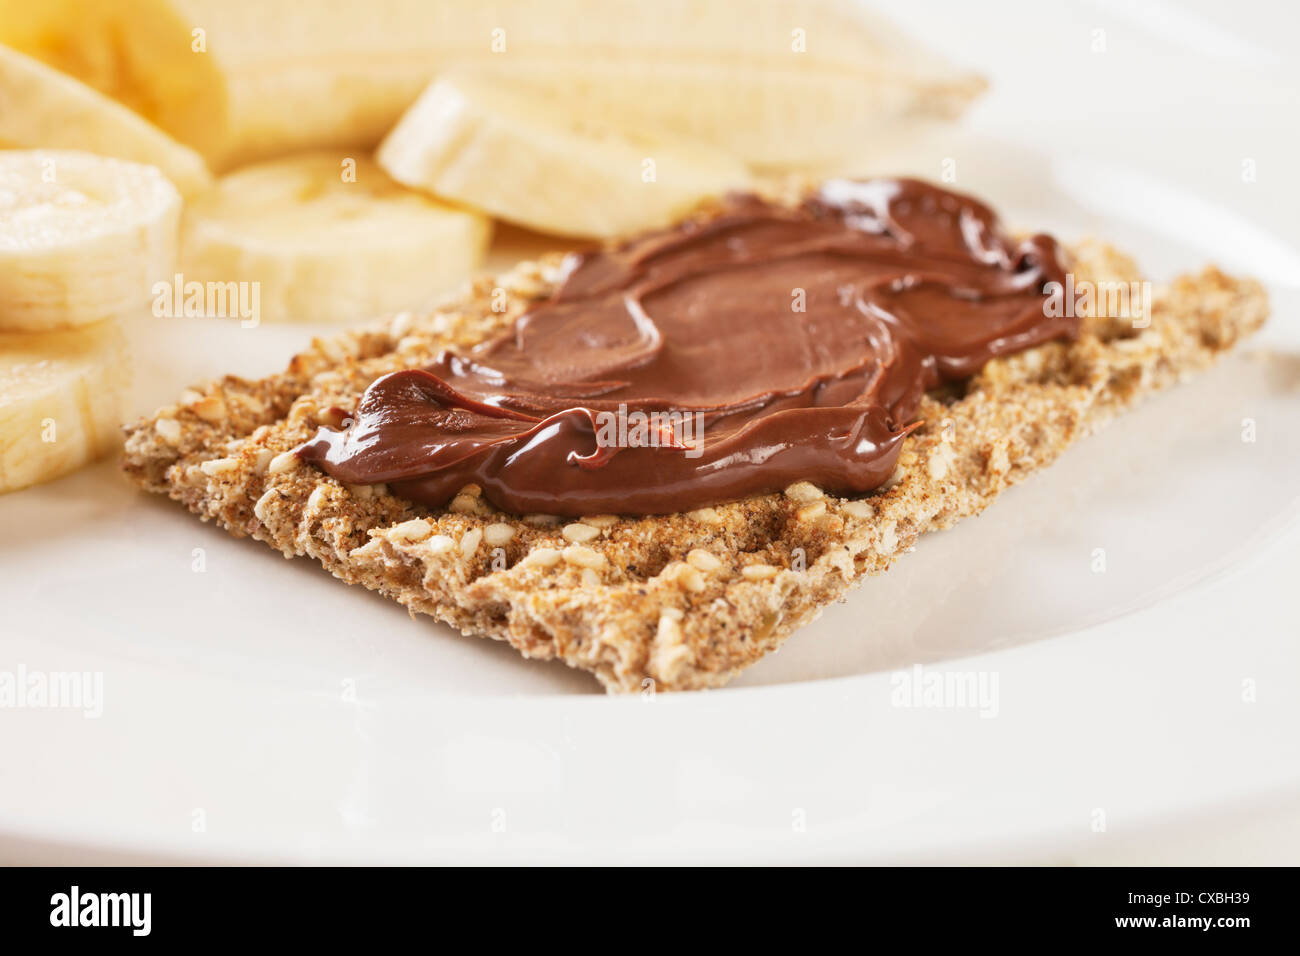 Eine kleine Mahlzeit von Knäckebrot mit Nutella und eine große Banane, für eine Gesamtmenge von 260 Kalorien oder 1100 Kilojoule. Stockfoto